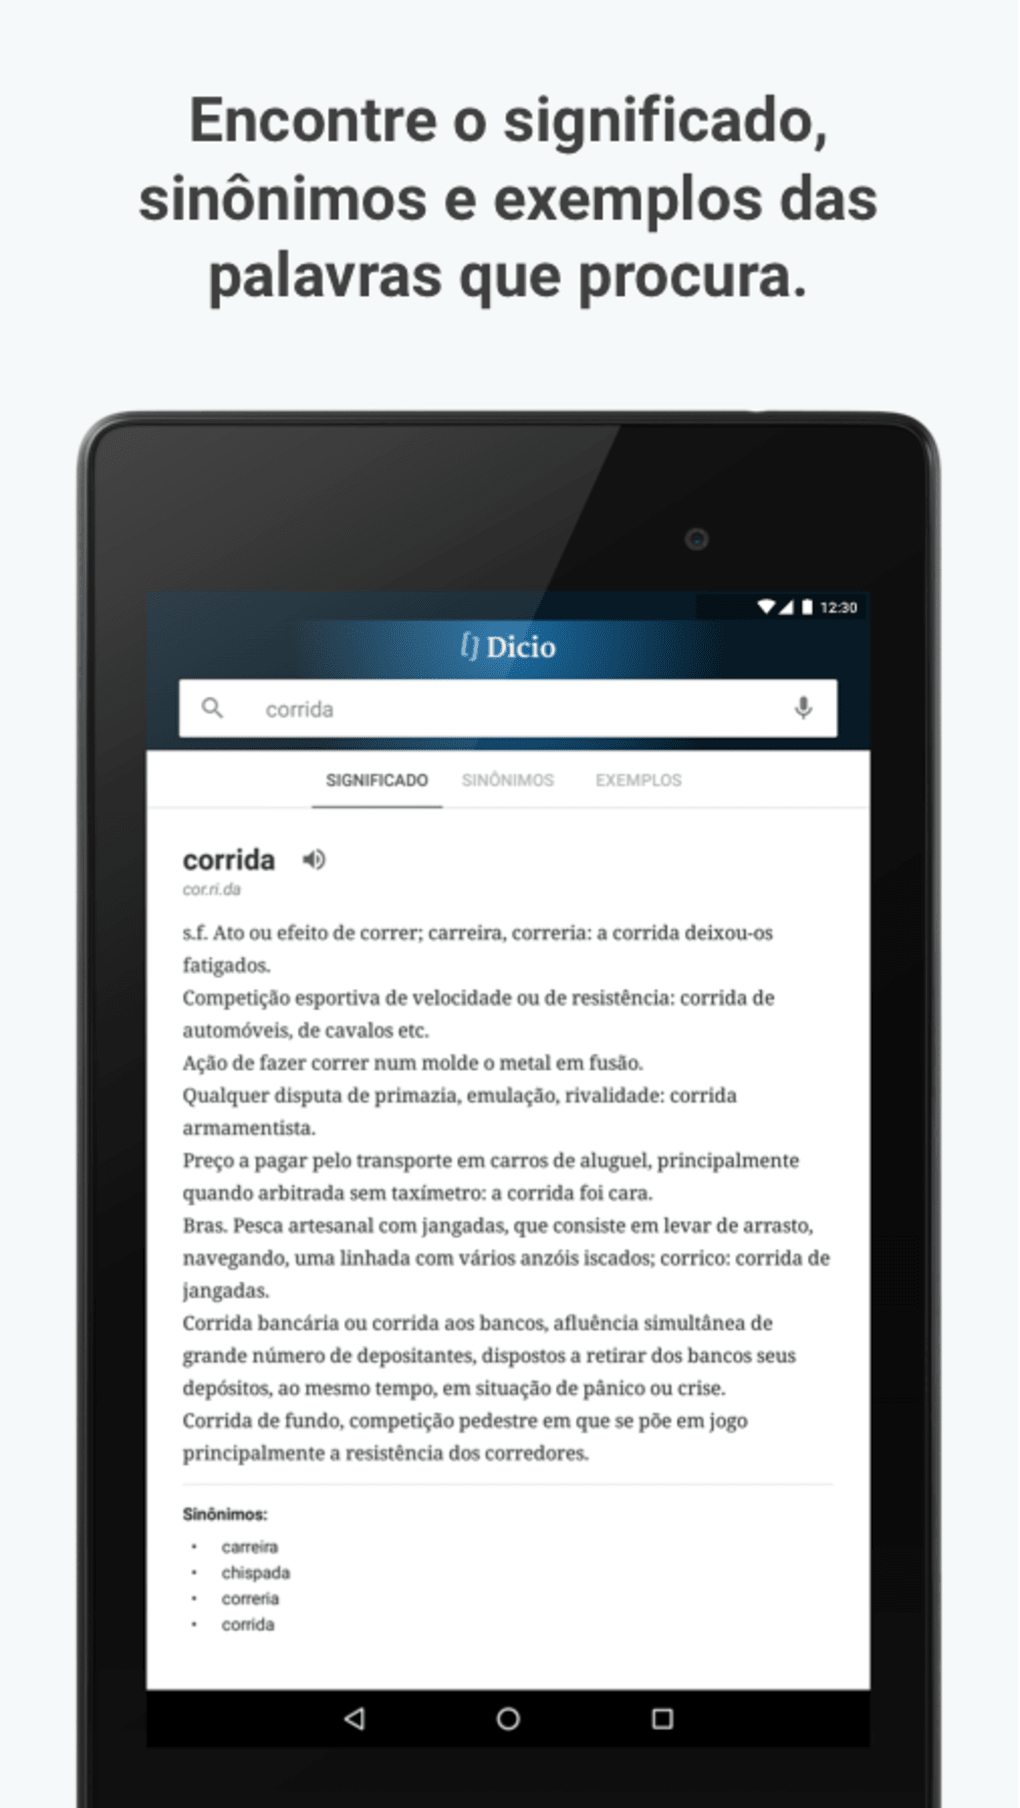 Play - Dicio, Dicionário Online de Português